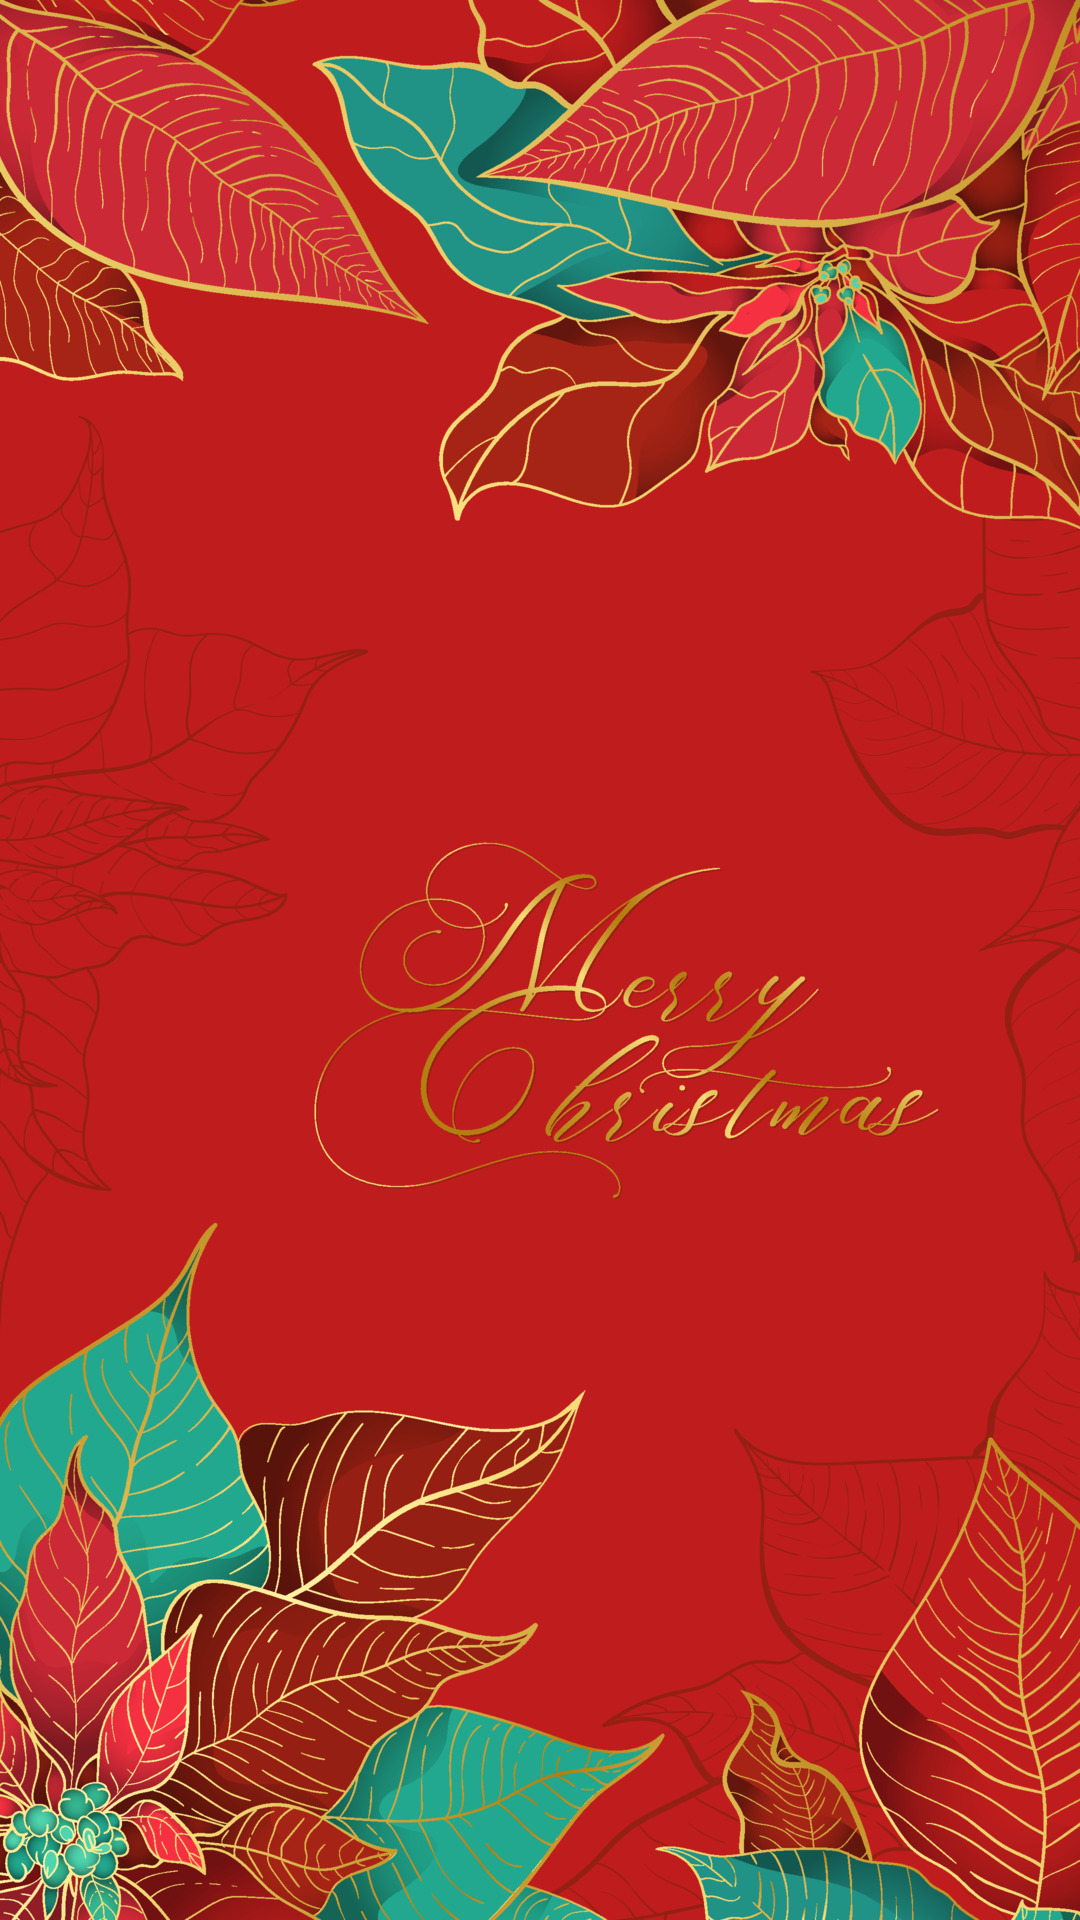 Carte de voeux avec fleurs et feuillages de fêtes vert et rouge